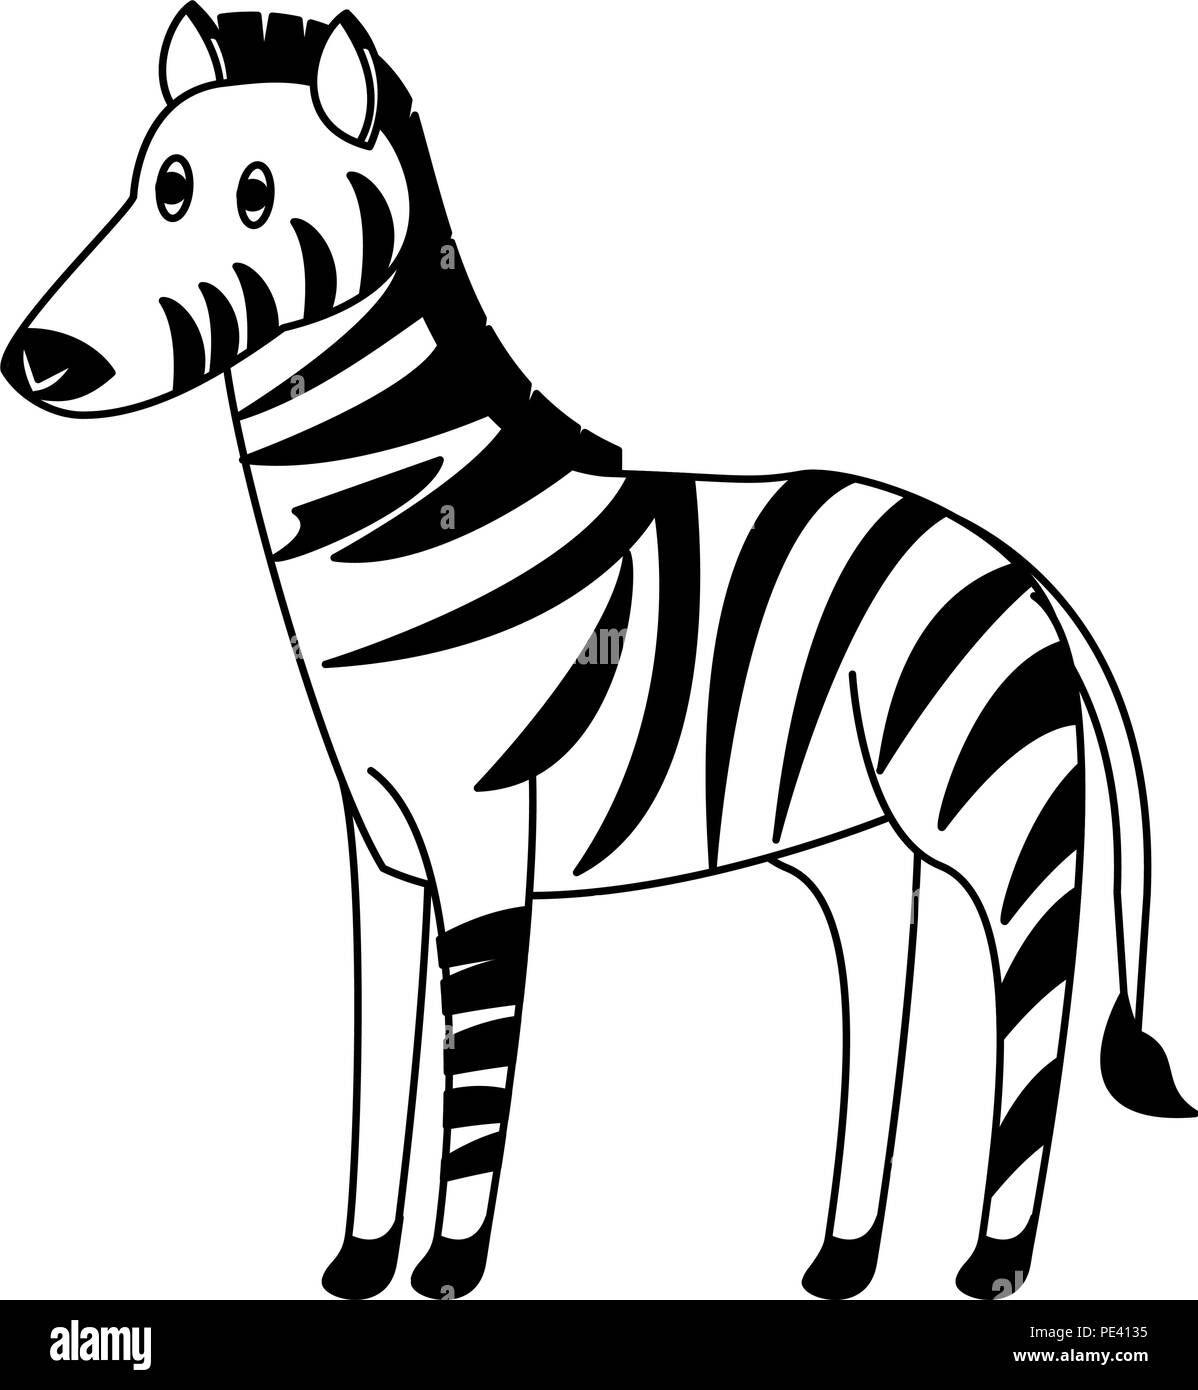 Zebra wild animal in black and white Stock Vector